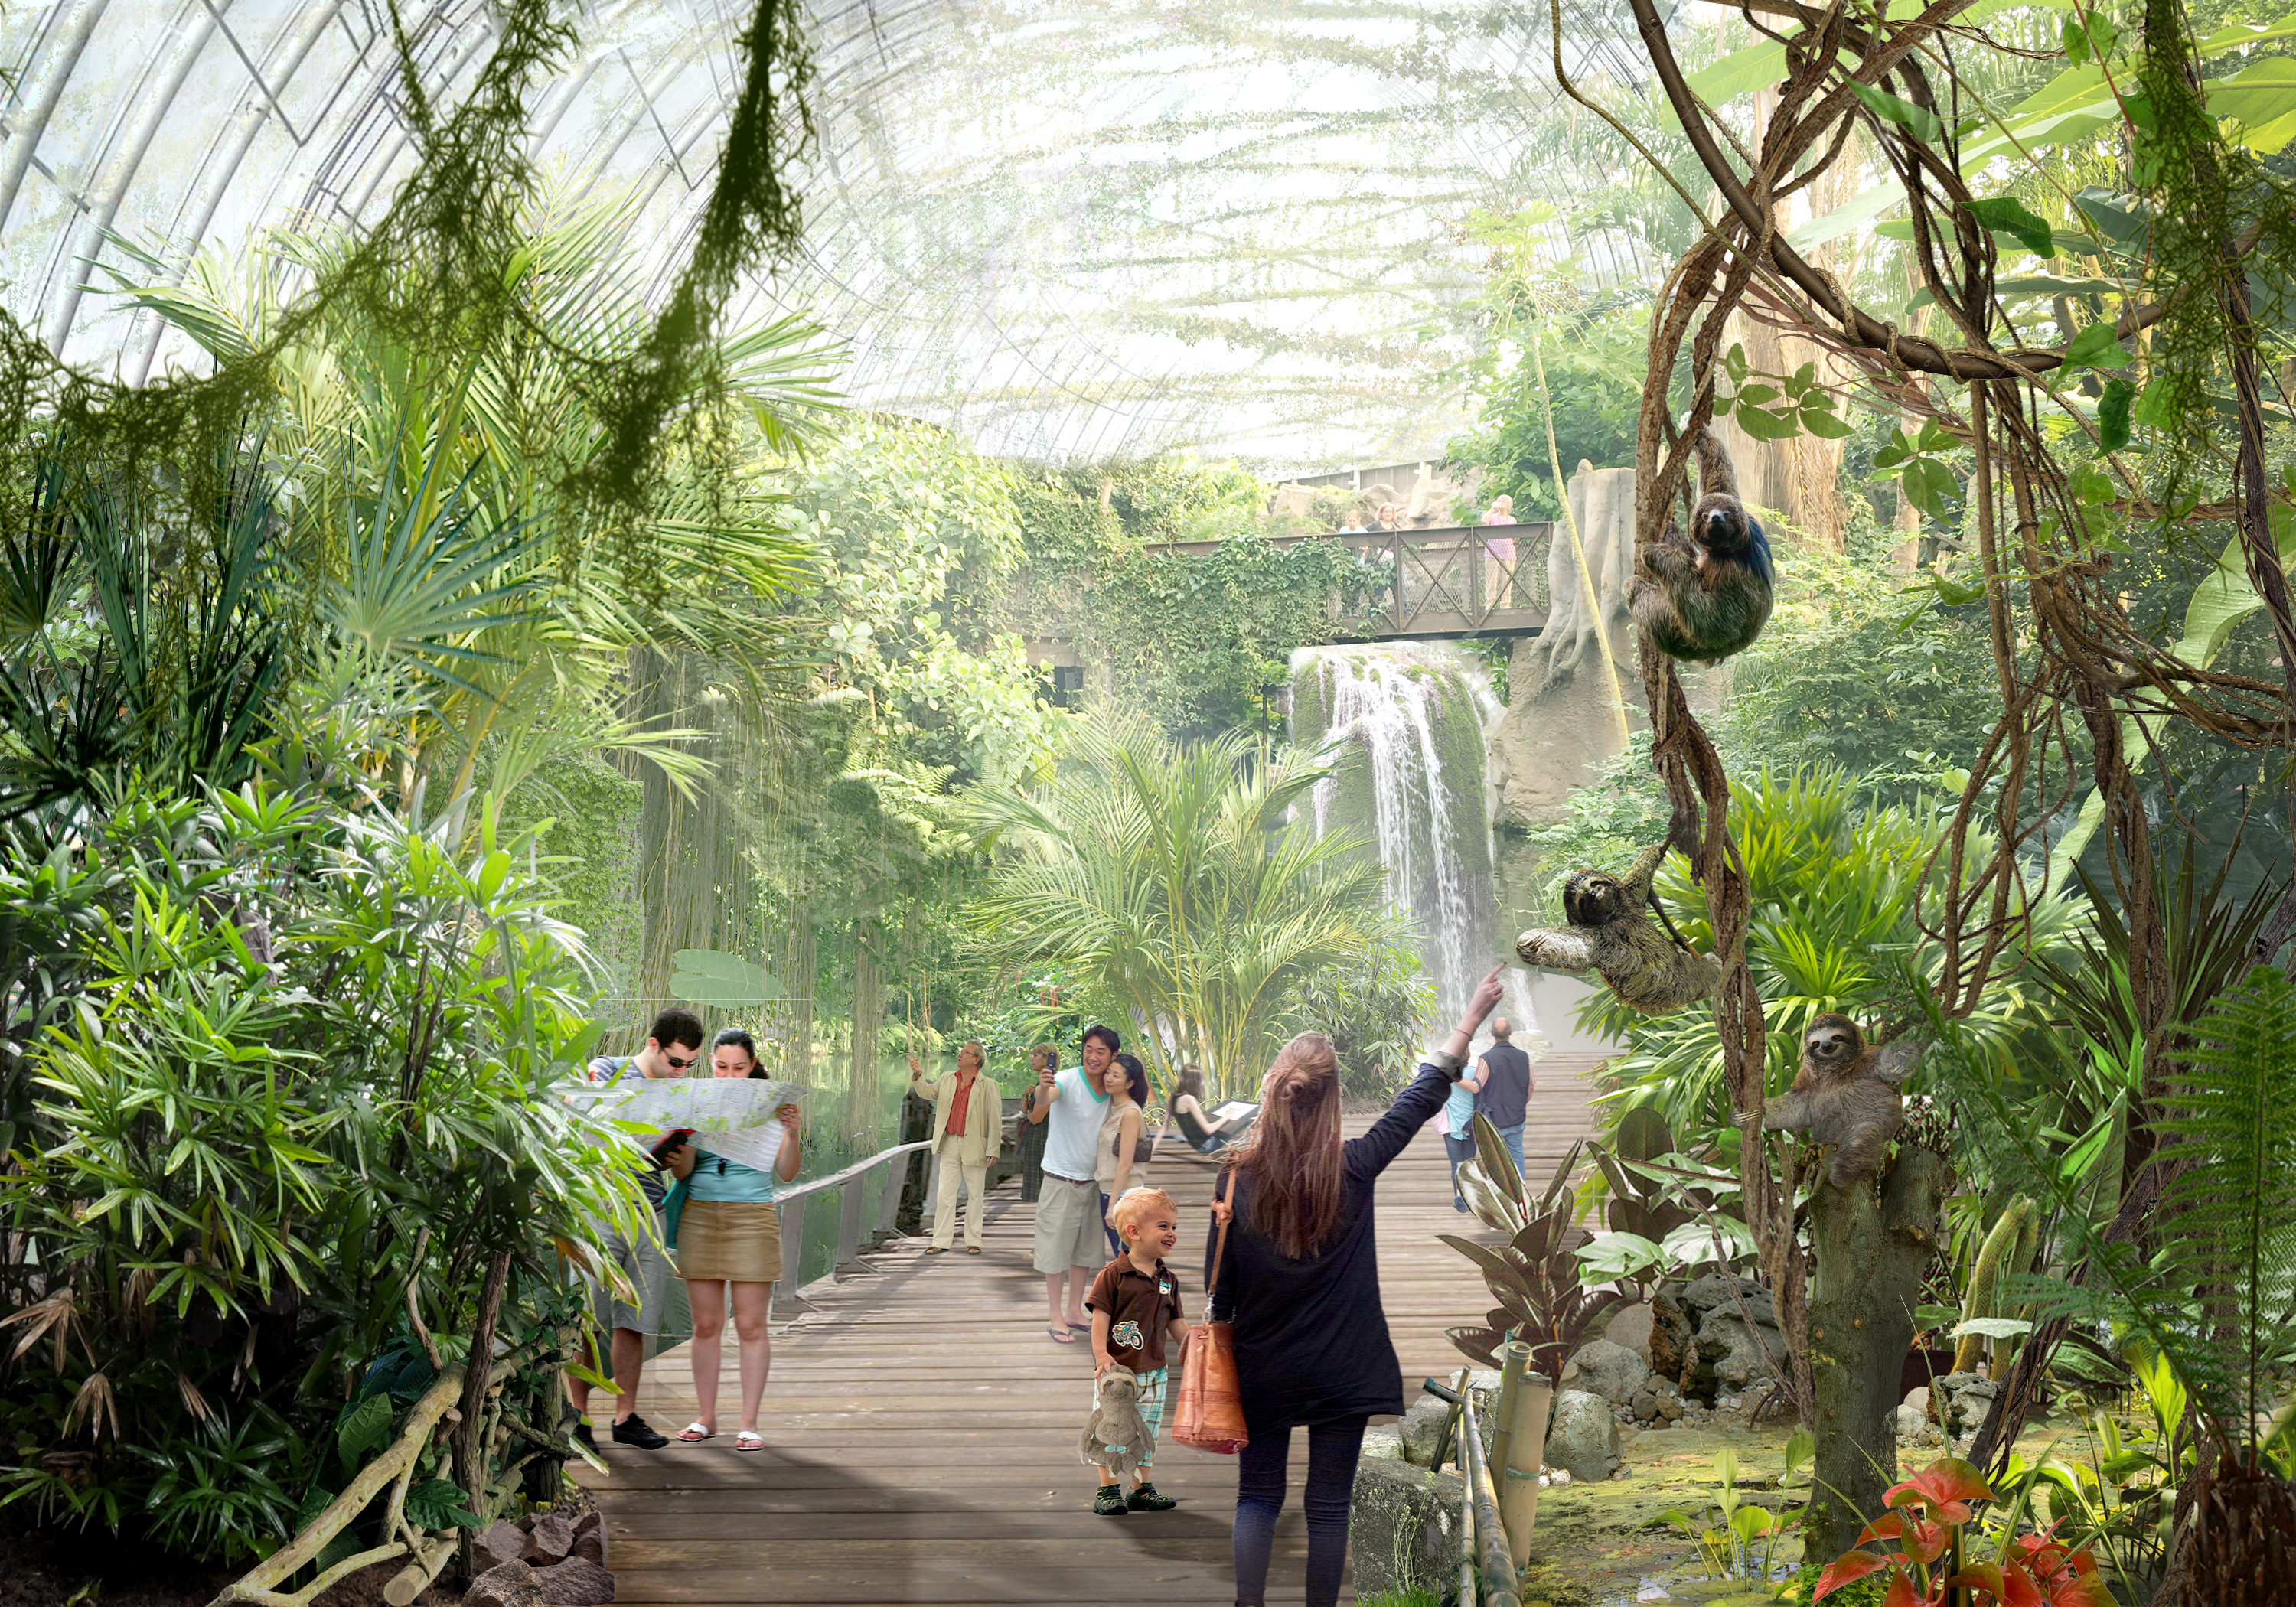 Тропический павильон — первый павильон, который гость посещает в зоопарке. Он сразу оказывается в другом мире 